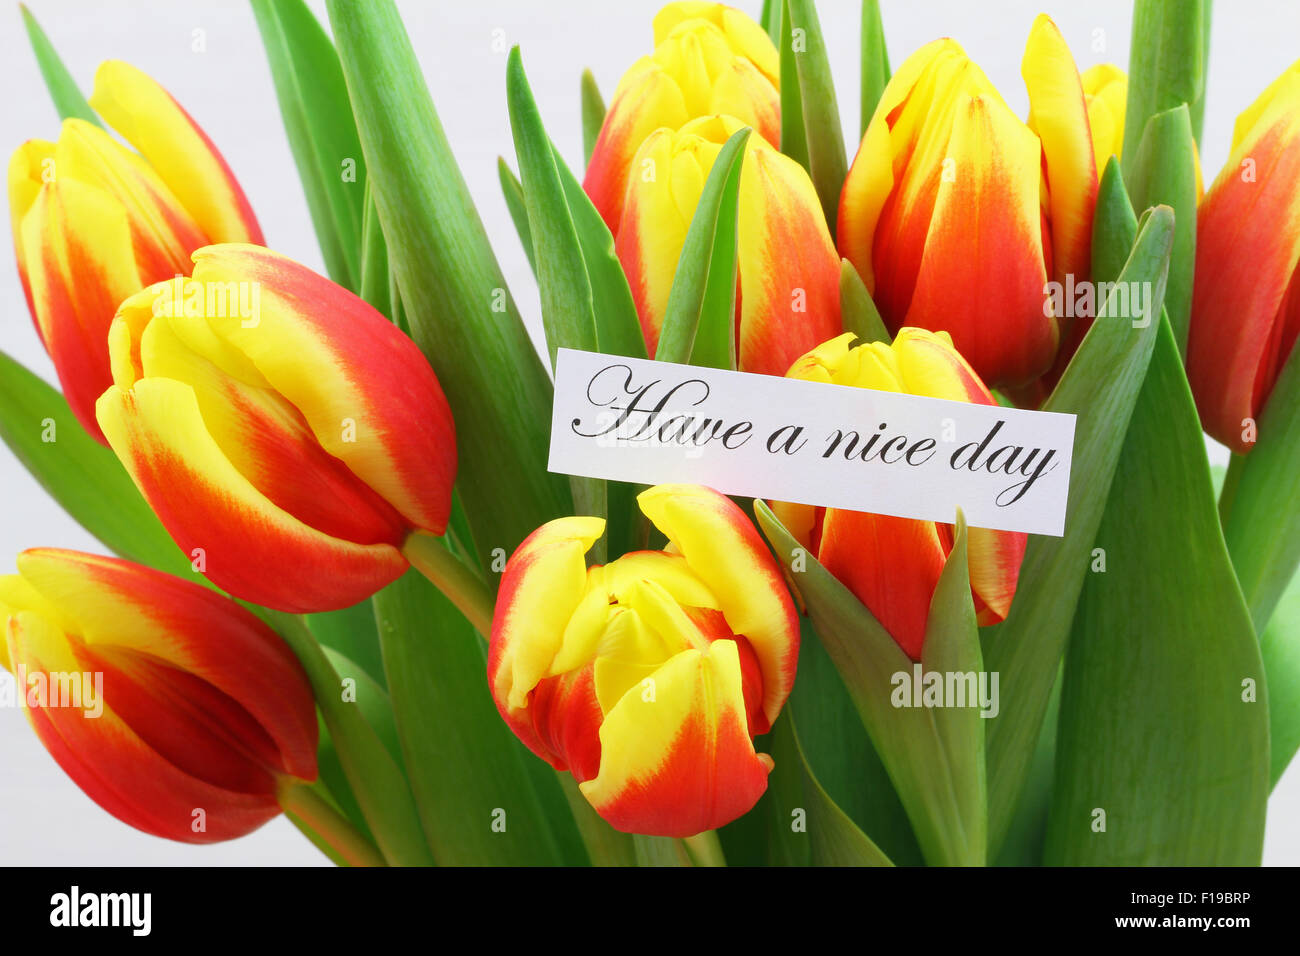 Ein schöner Tag Karte mit bunten Tulpen Stockfoto